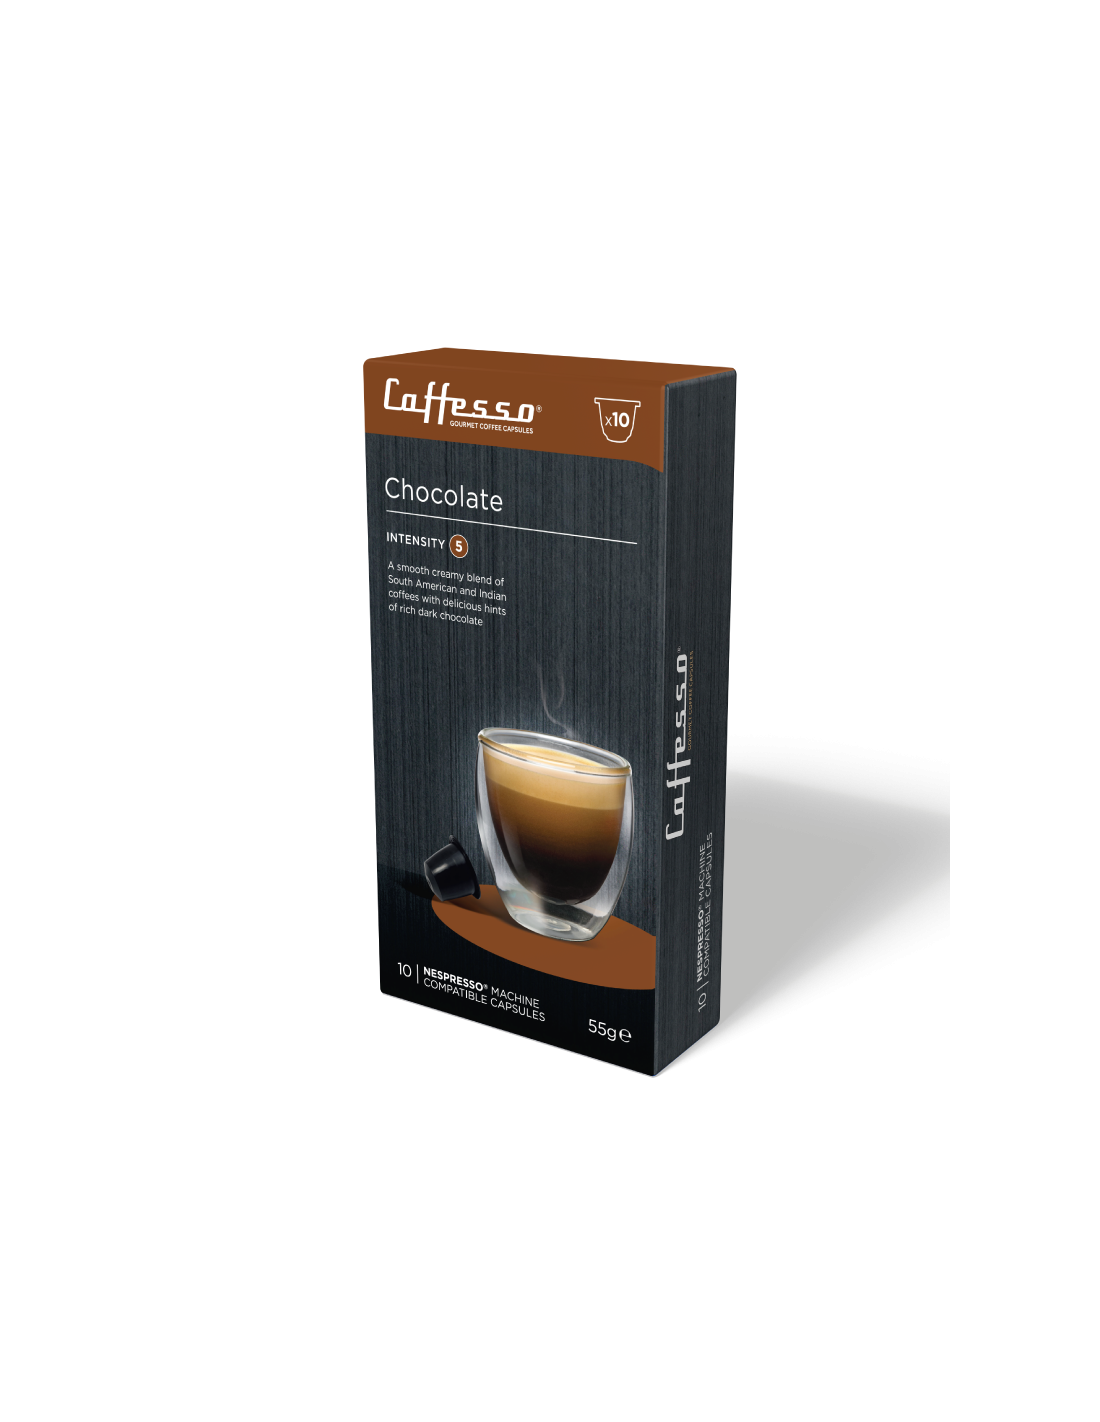 Cápsulas de Café Chocolate para Nespresso Caffesso